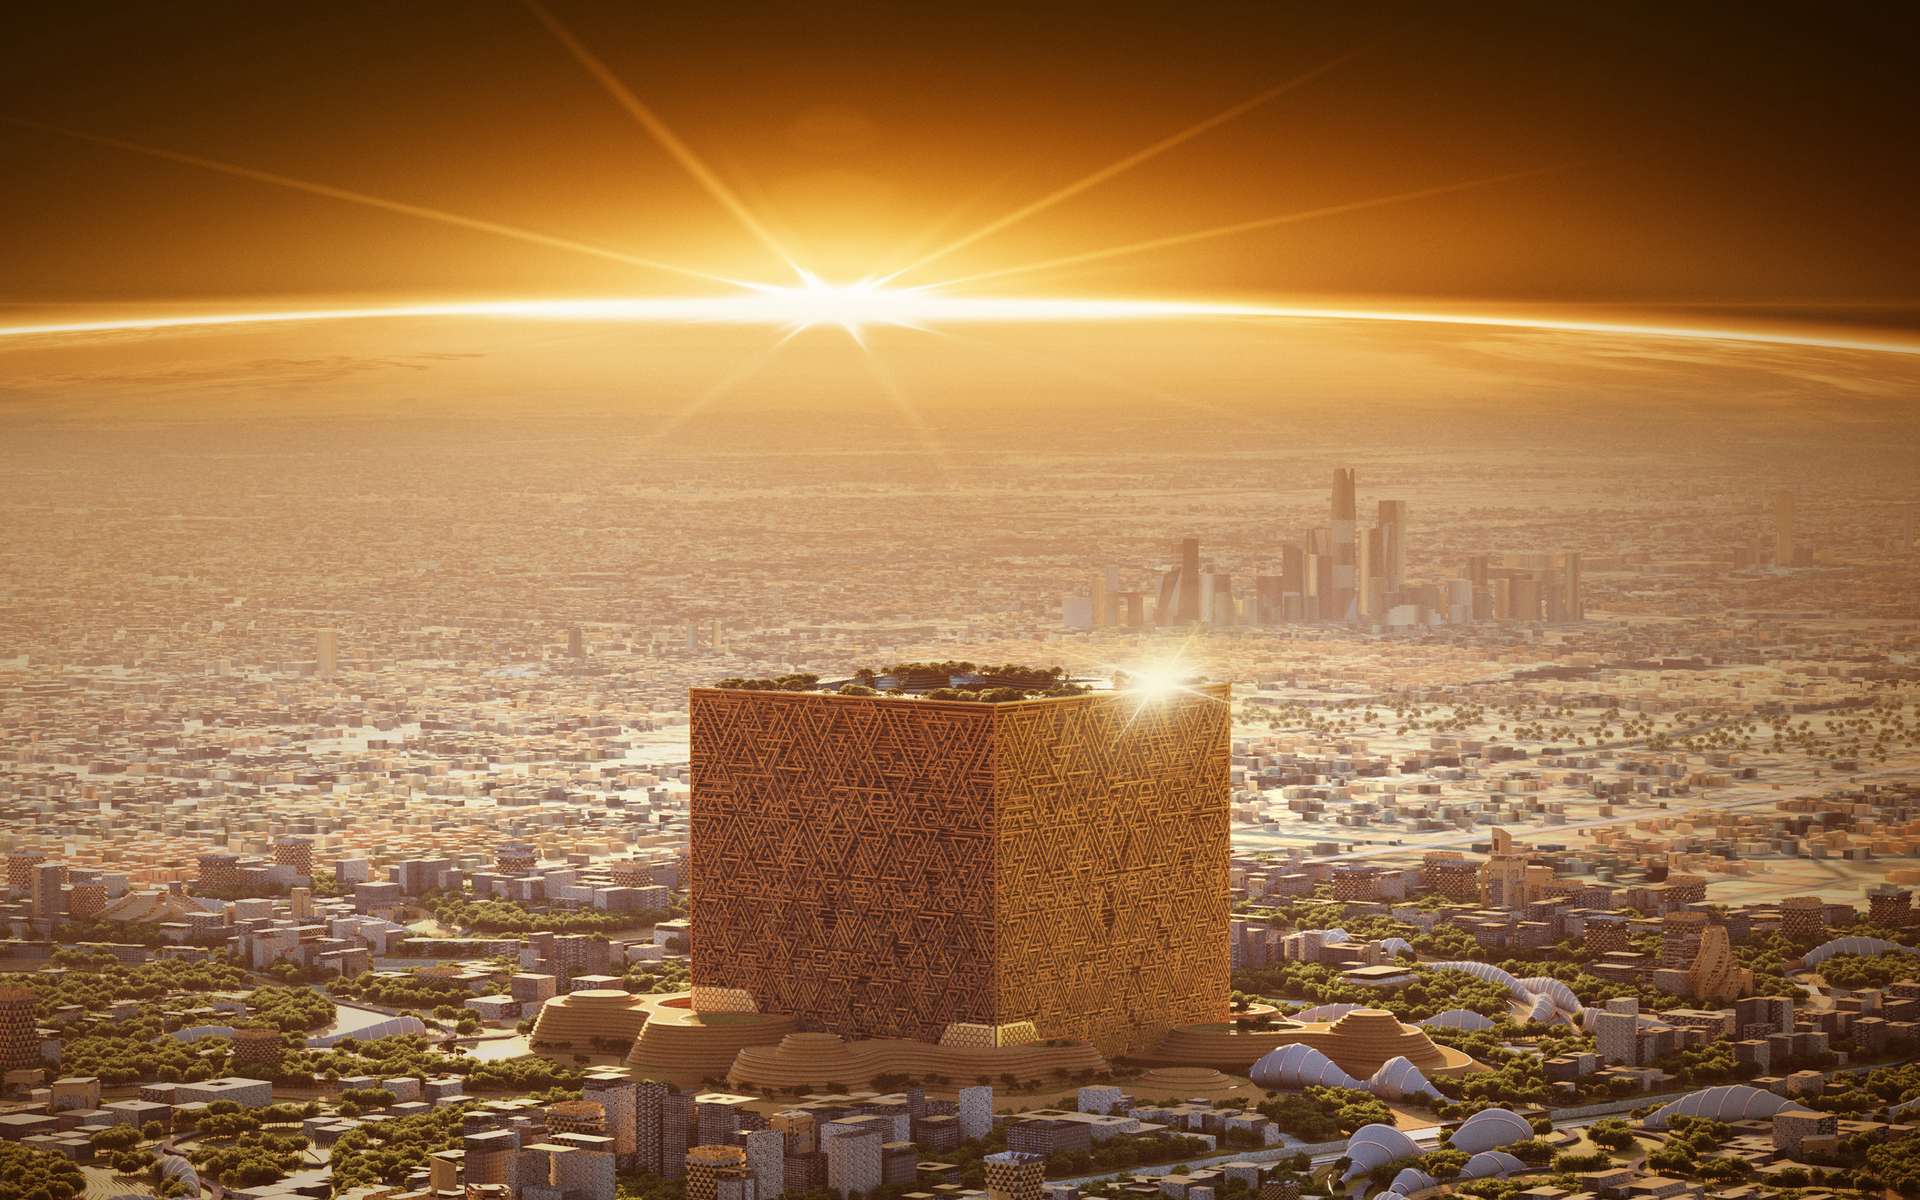 Le projet pharaonique de l'Arabie Saoudite de construire un cube monumental de 400 mètres de côté !